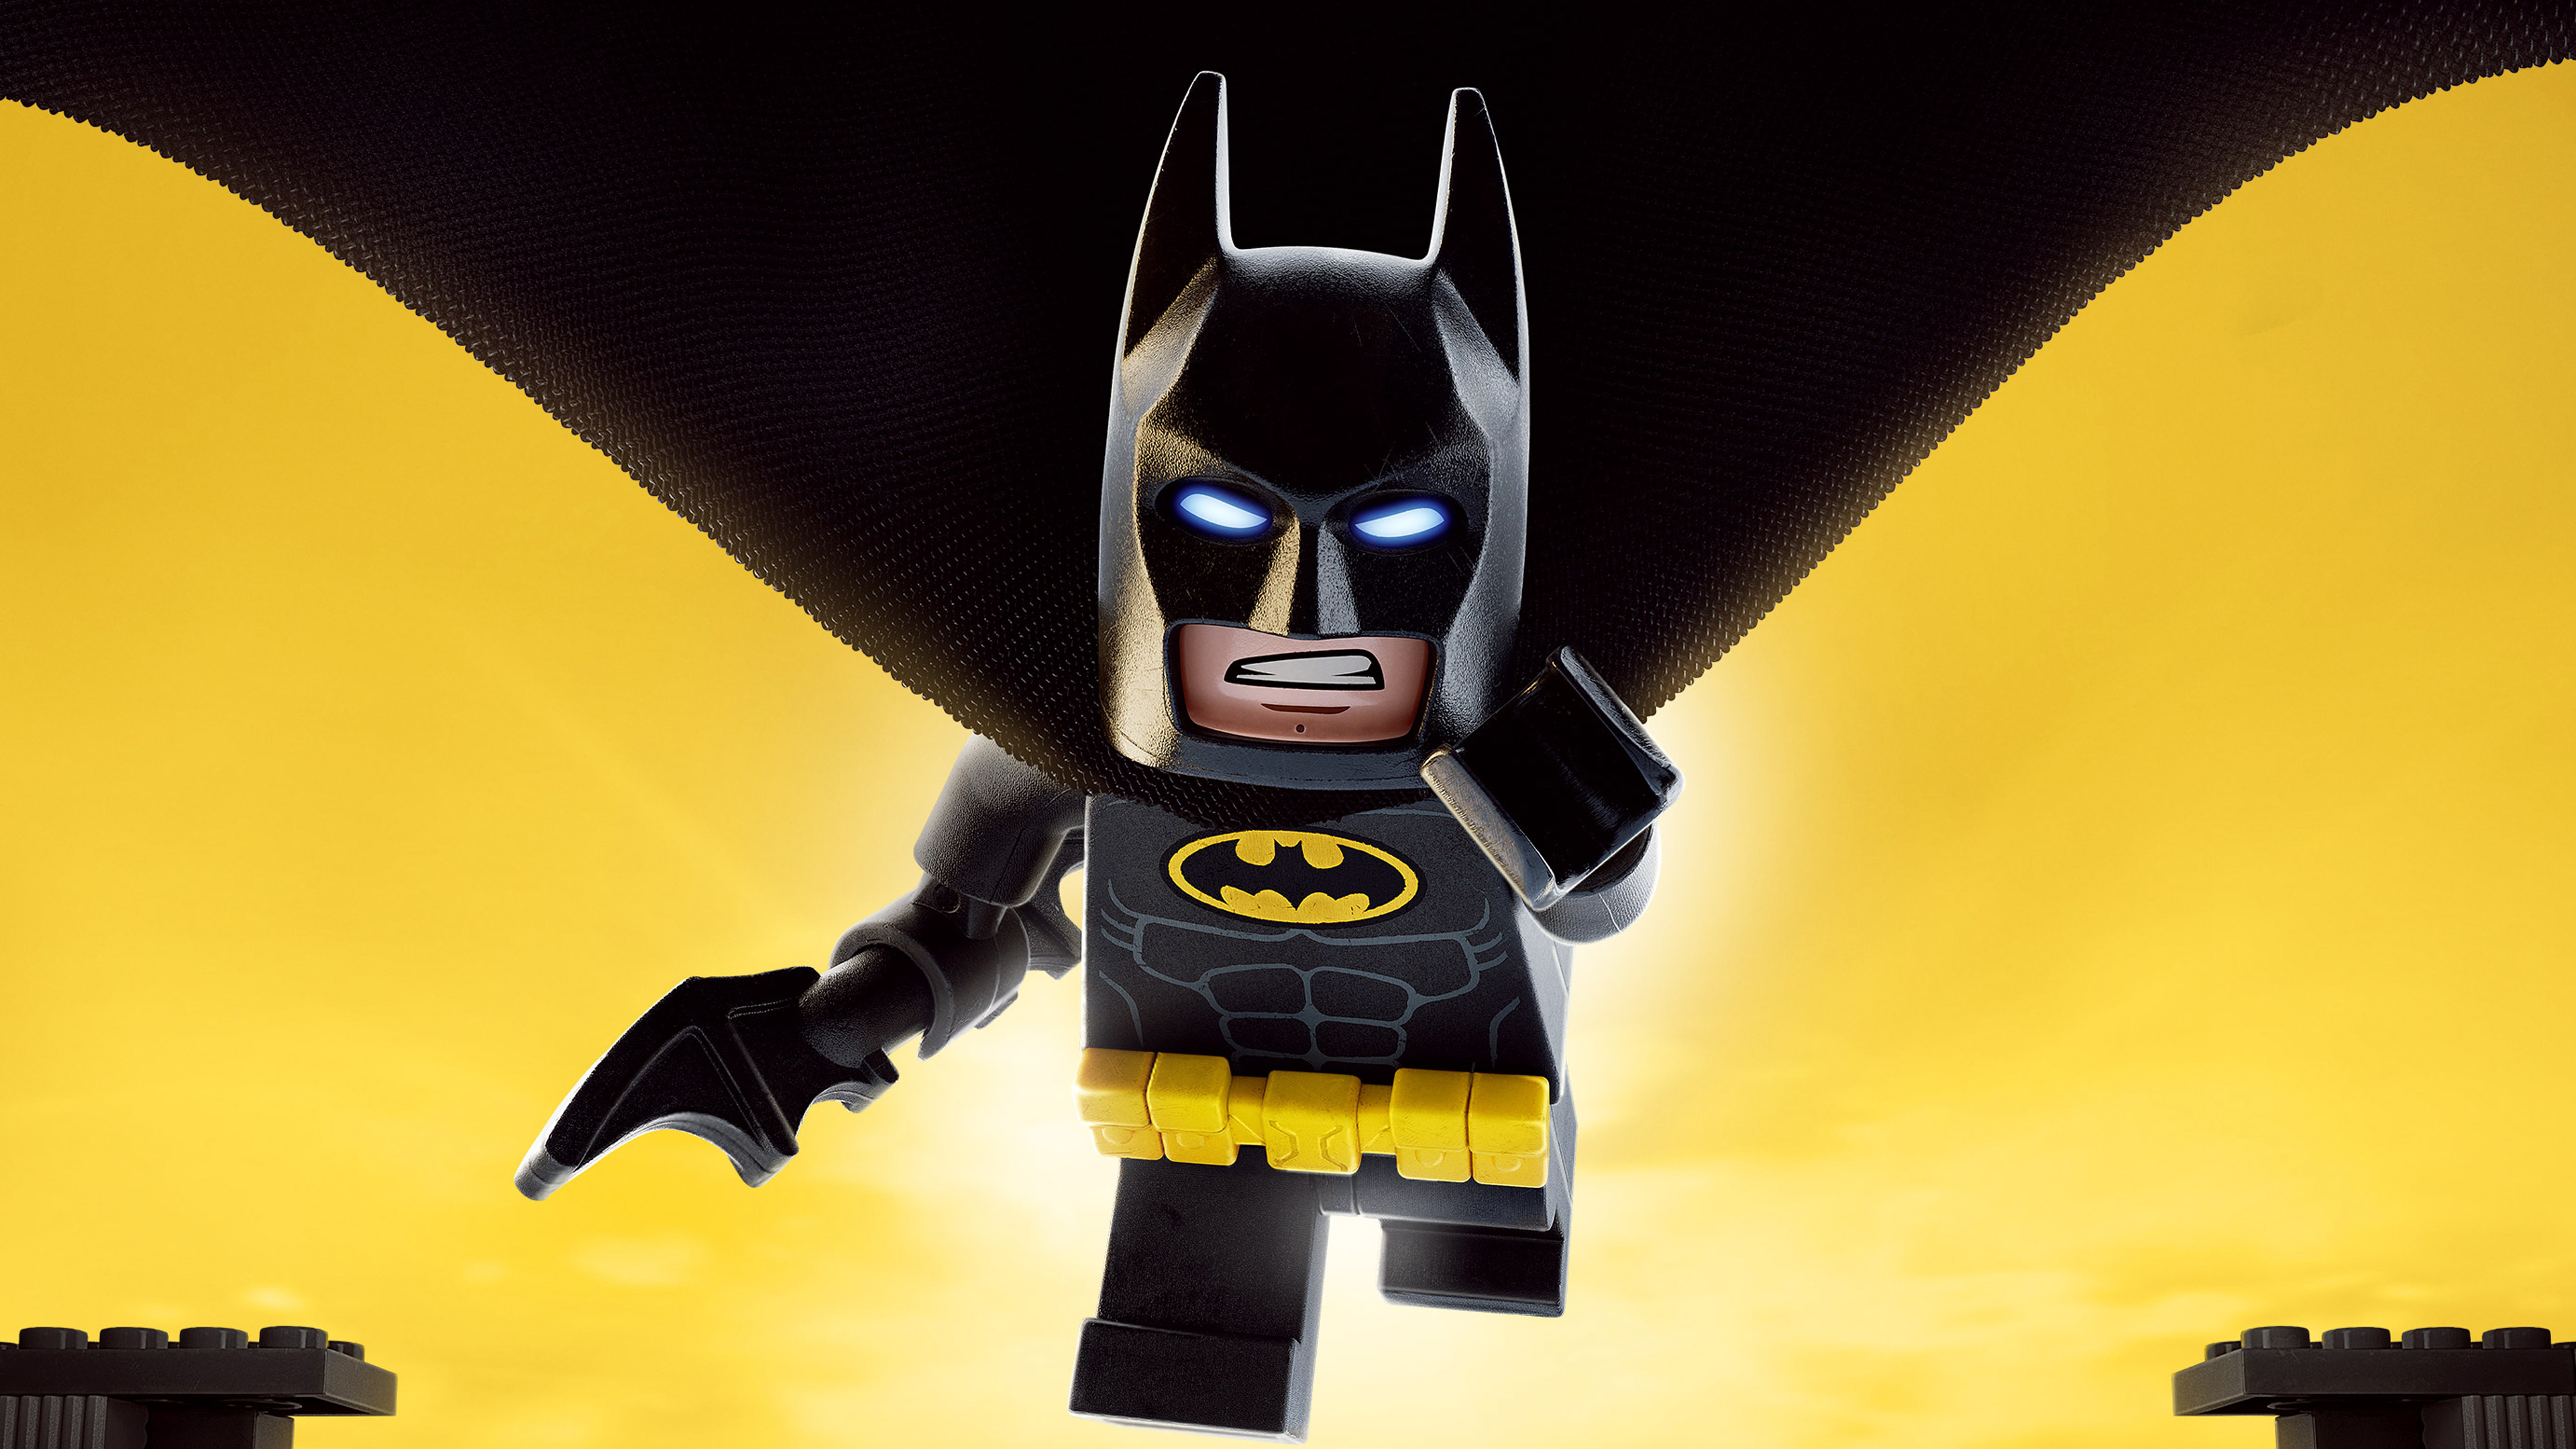 Batman The Lego Batman Movie Lego 3840x2160